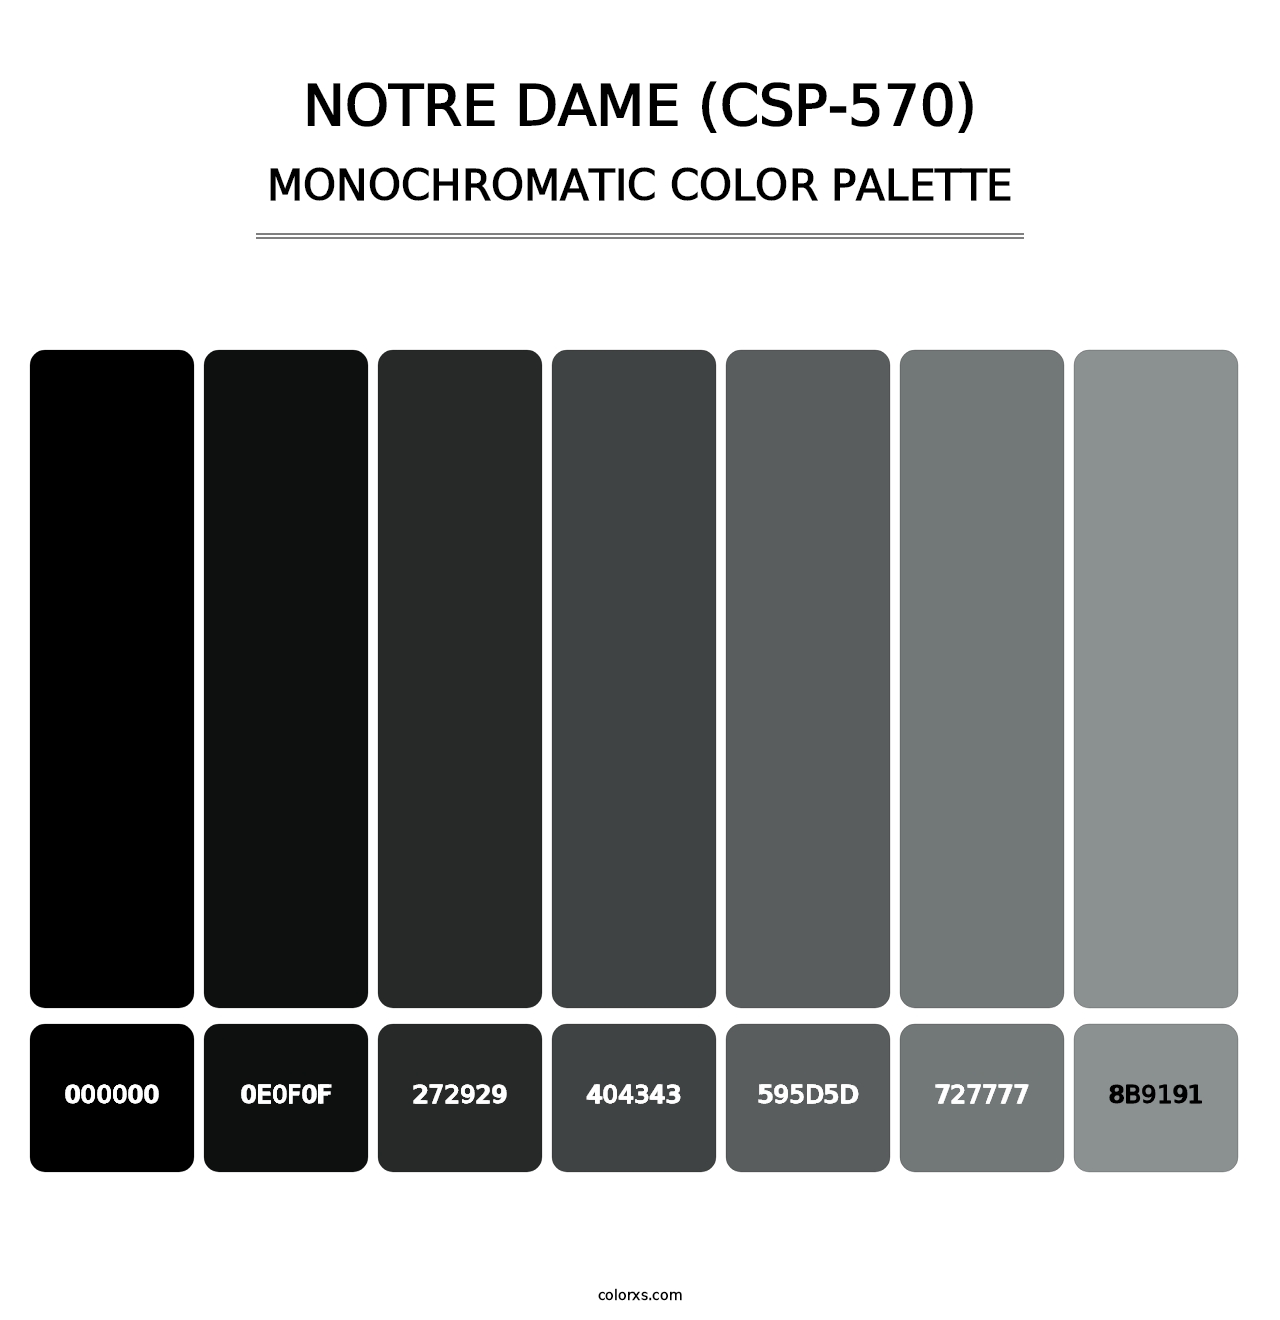 Notre Dame (CSP-570) - Monochromatic Color Palette